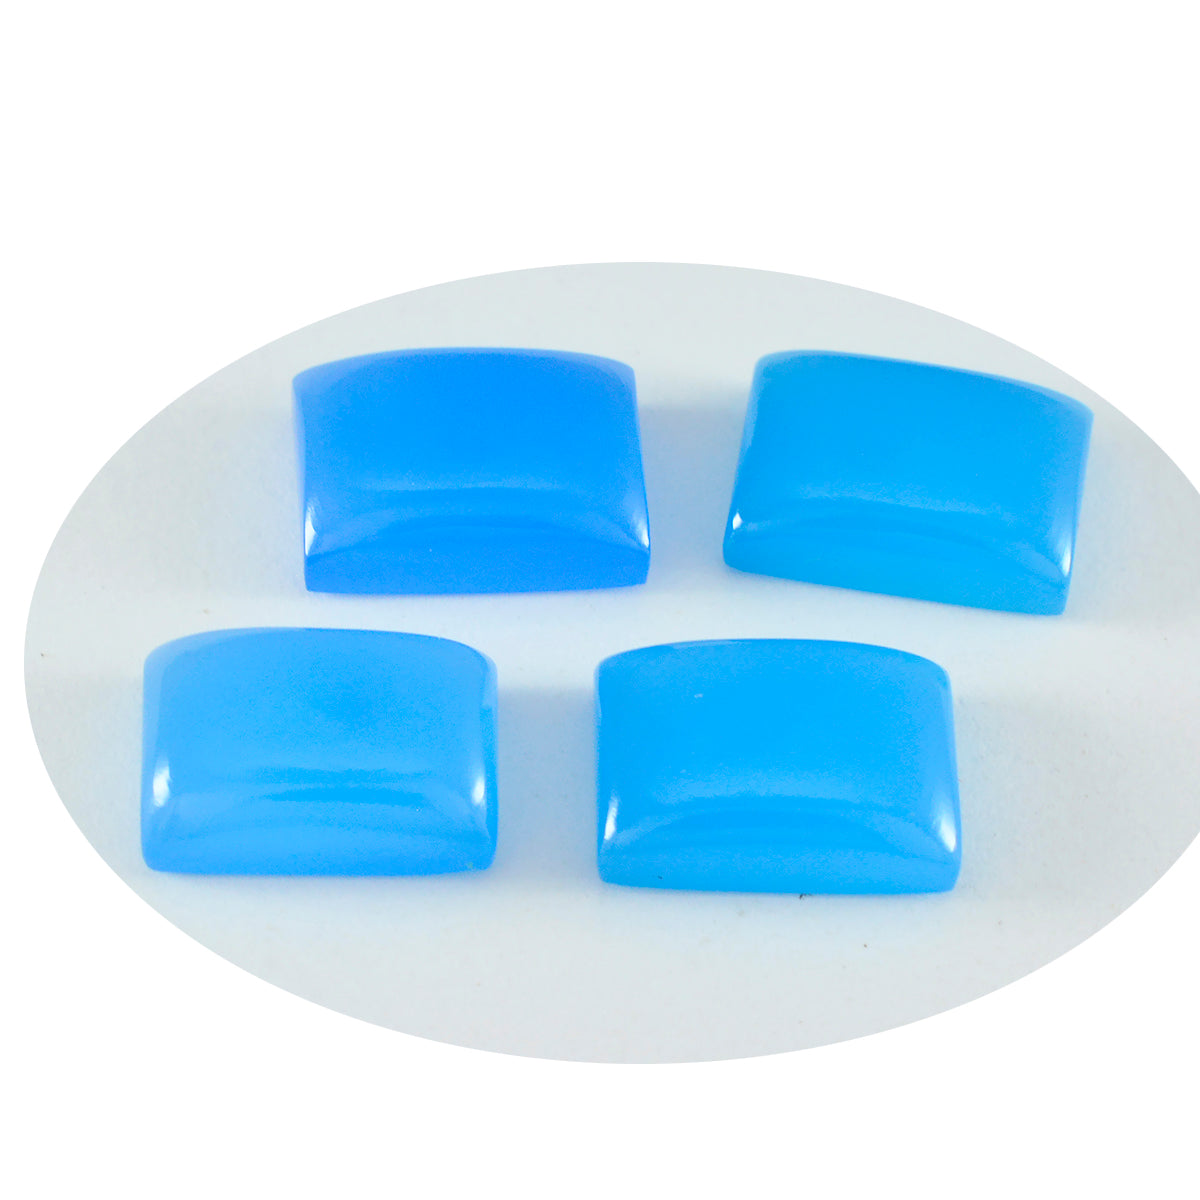 Riyogems 1 pc cabochon de calcédoine bleue 10x12mm forme octogonale belles pierres précieuses de qualité